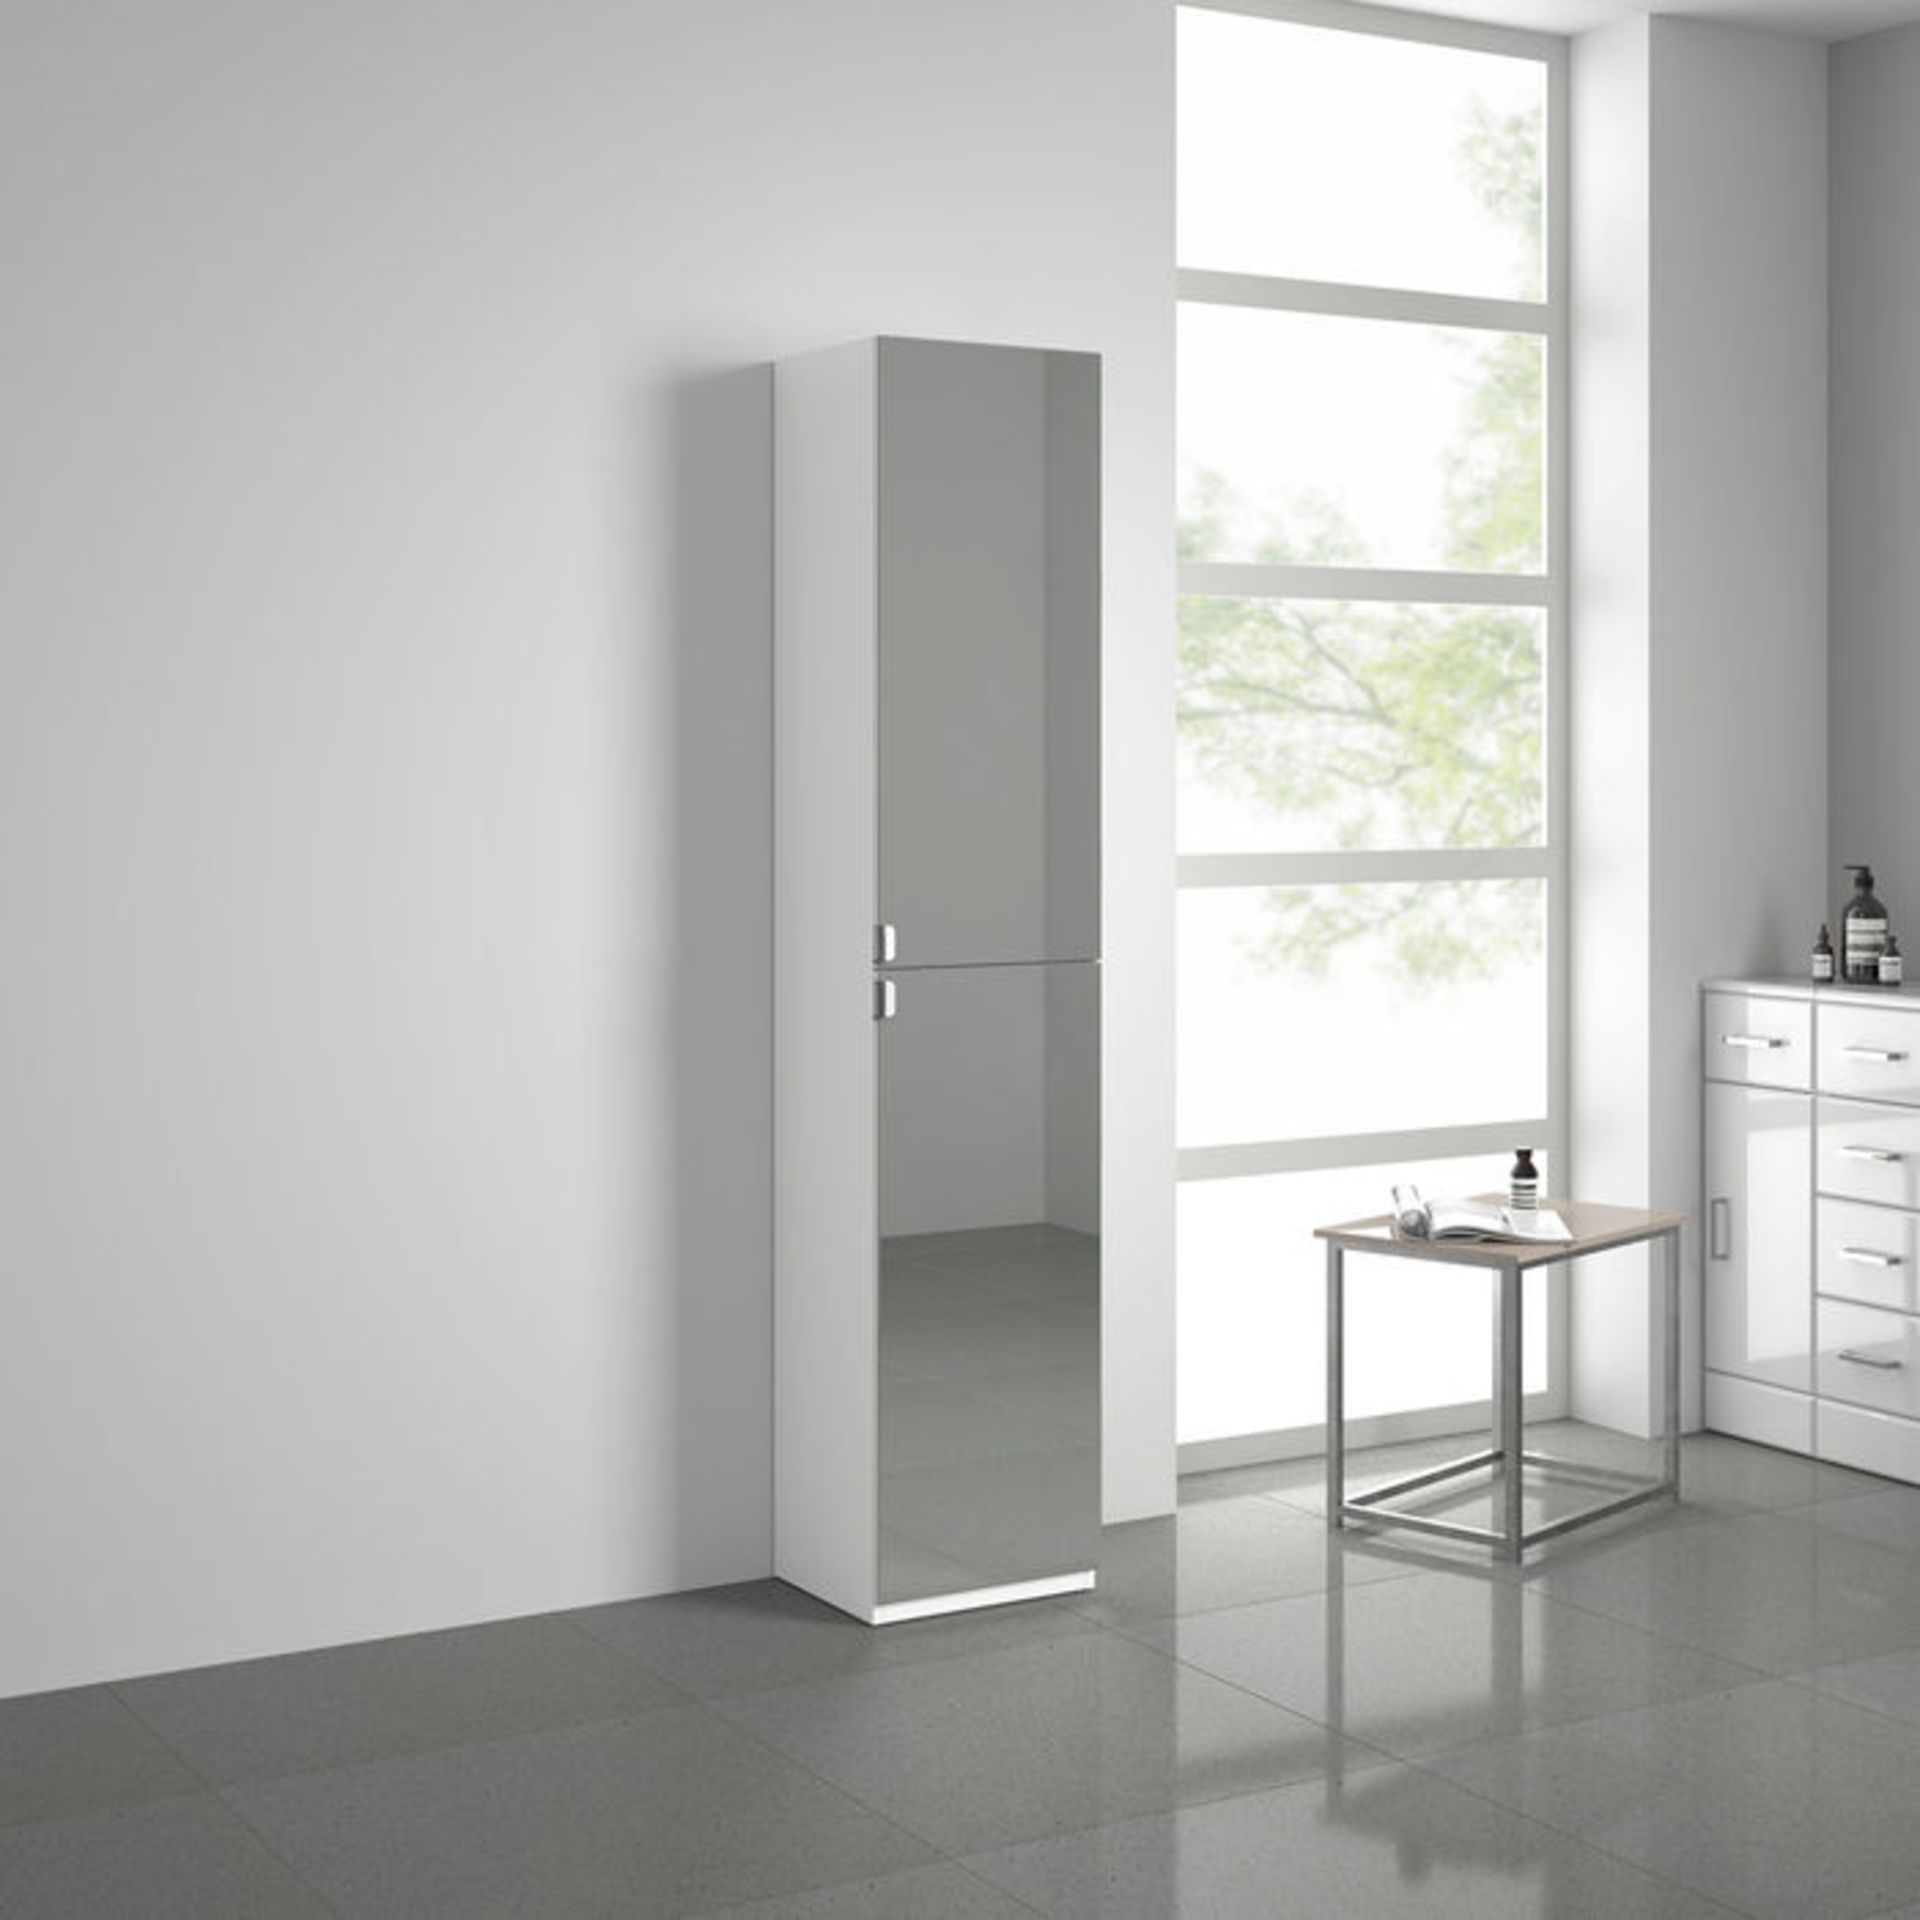 (MT58) 1700x350mm Mirrored Door Matte White Tall Storage Cabinet - Floor Standing. RRP £249.99. - Image 3 of 4